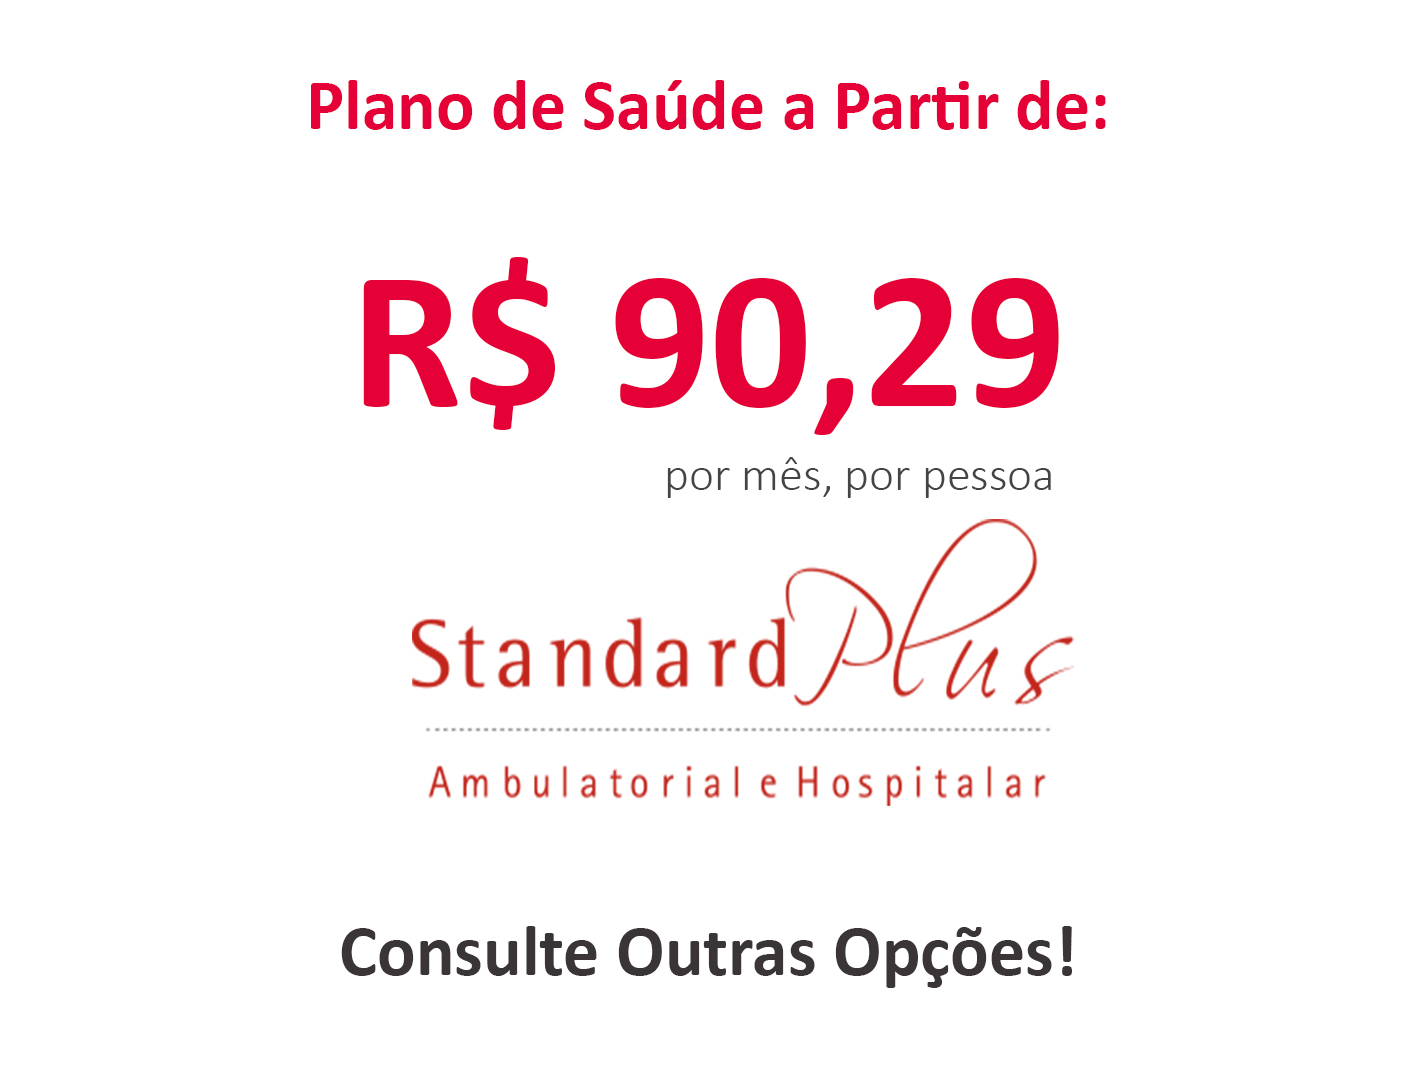 Sobre o Plano de Saúde Paraná Clínicas